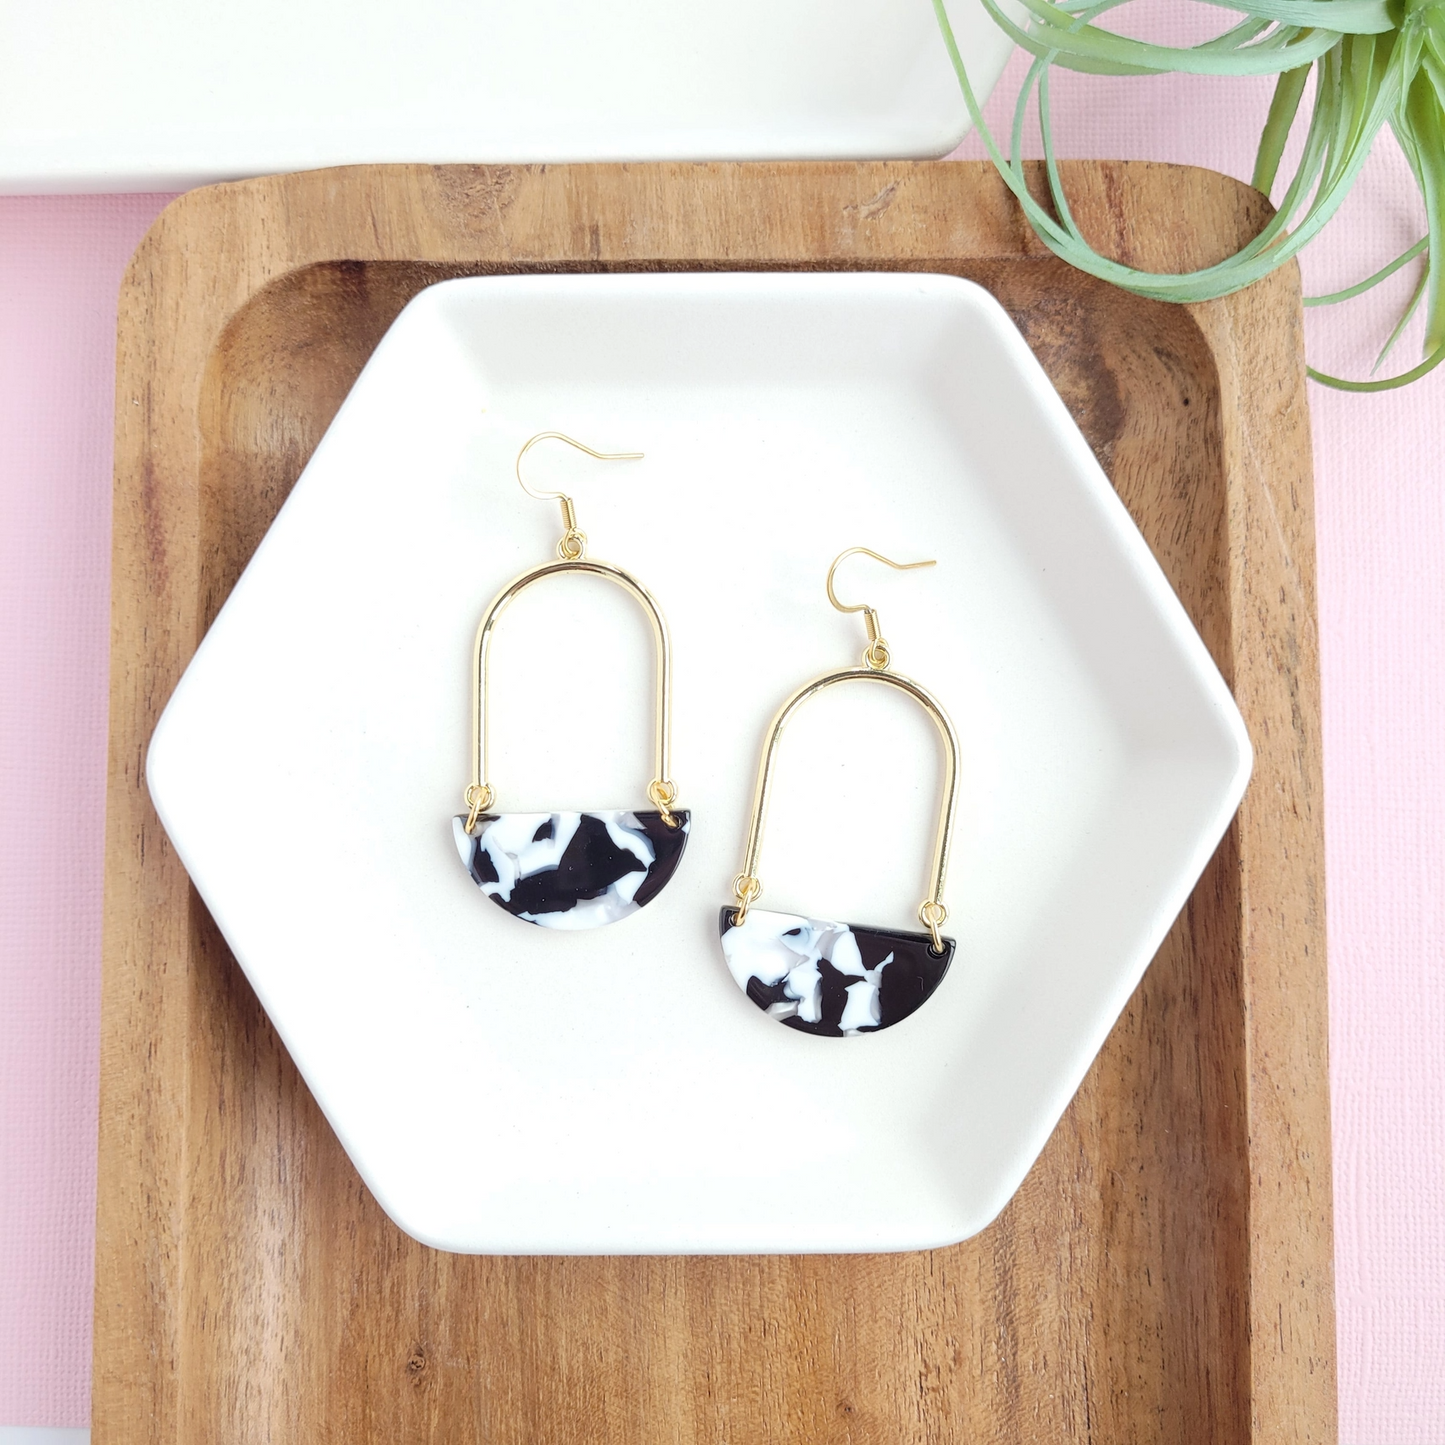 Stella Earrings - Black & White / Gold Arch Dangle Earring Wire Earrings